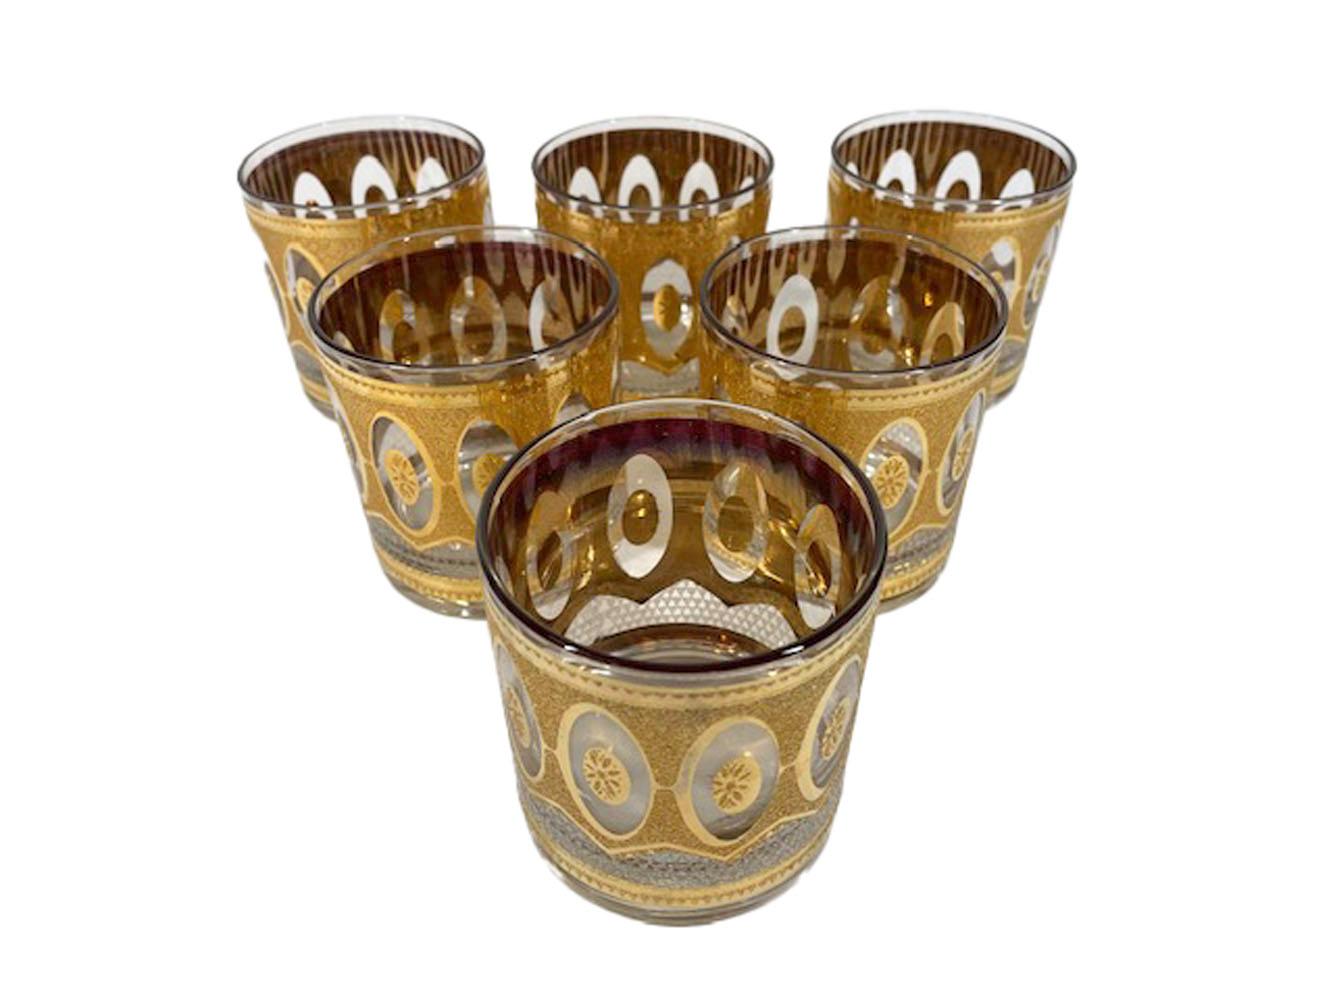 Ensemble de 6 verres en roche de style moderne du milieu du siècle dernier, inspirés du motif Régence de Culver, LTD., décorés en or 22 carats avec des finitions texturées et lisses encadrant une série de réserves ovales.